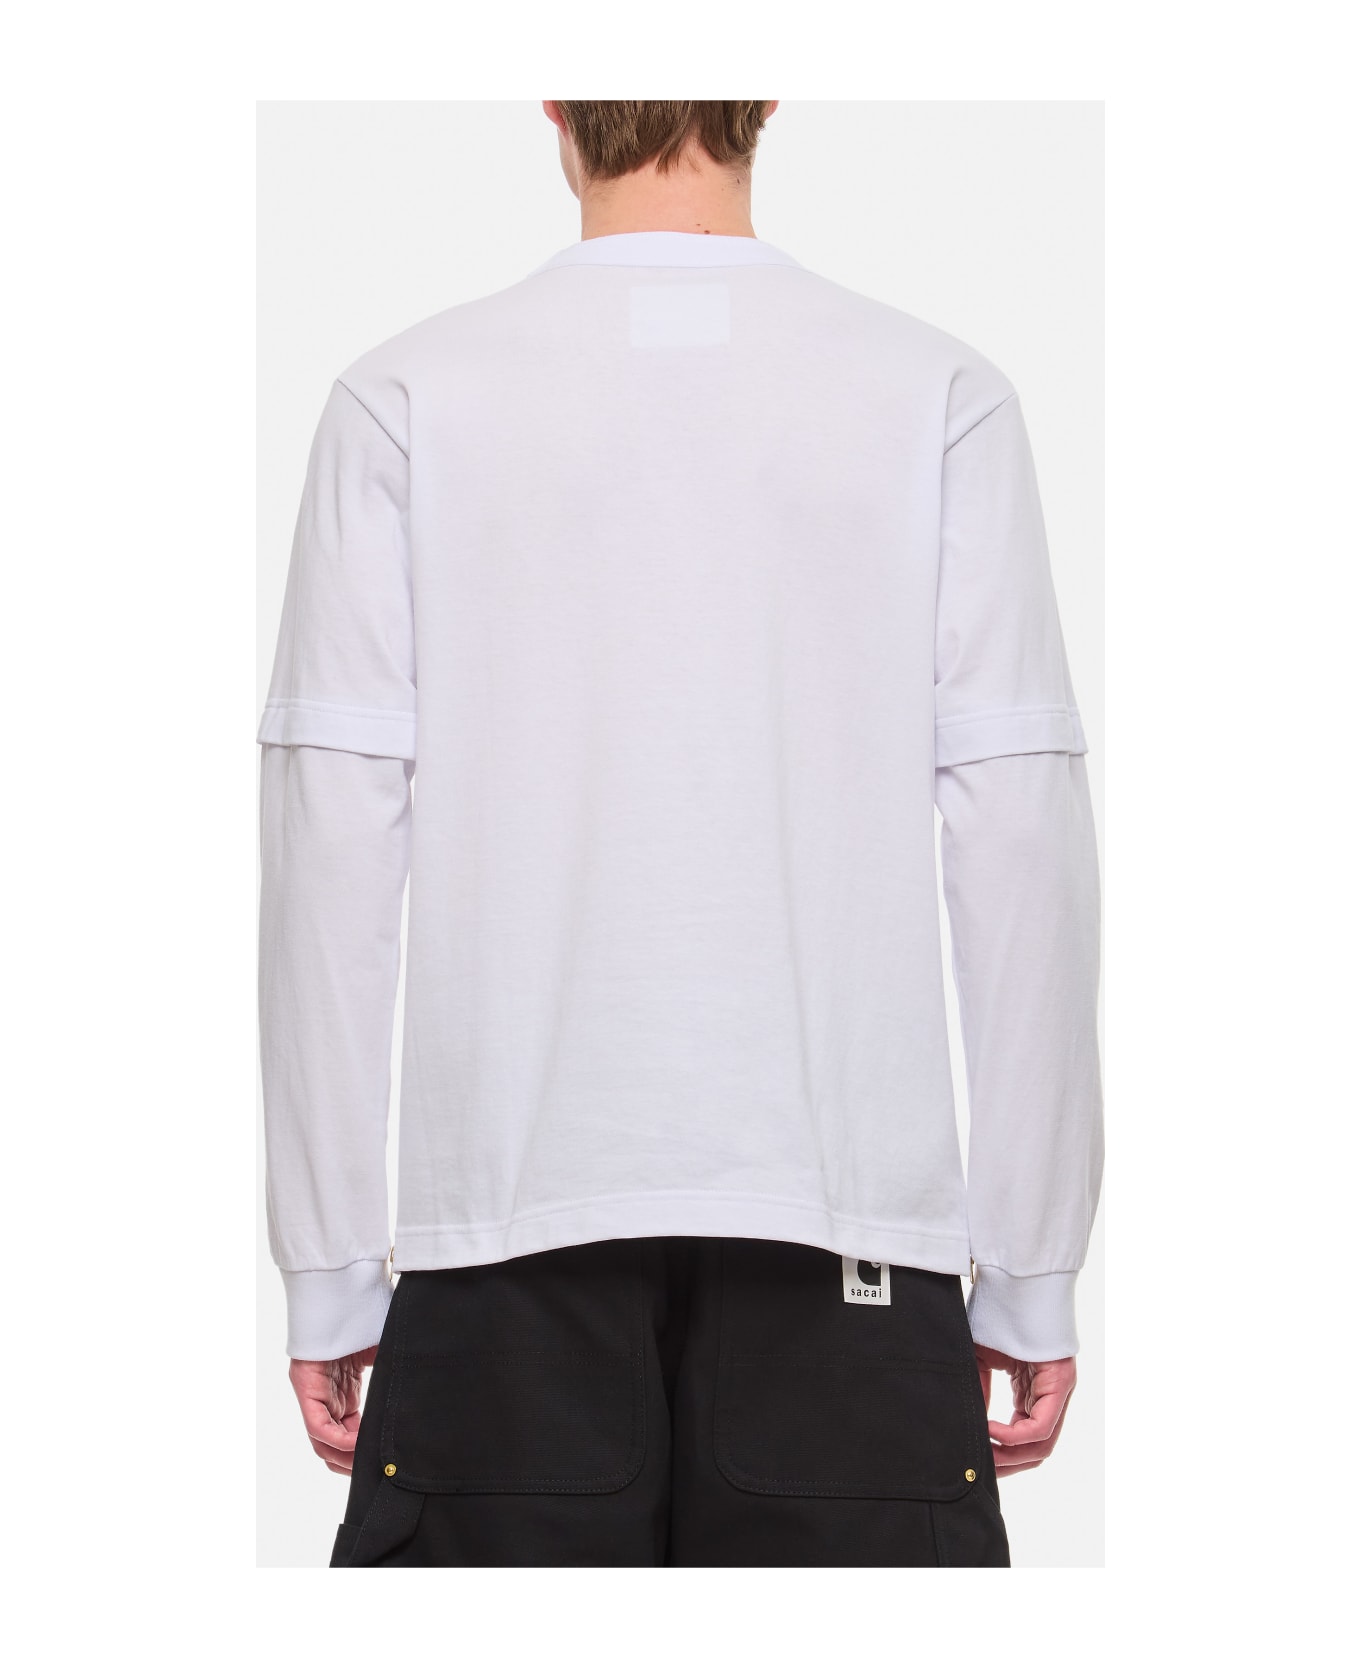 Sacai X Carhartt Wip L/s Cotton T-shirt - White